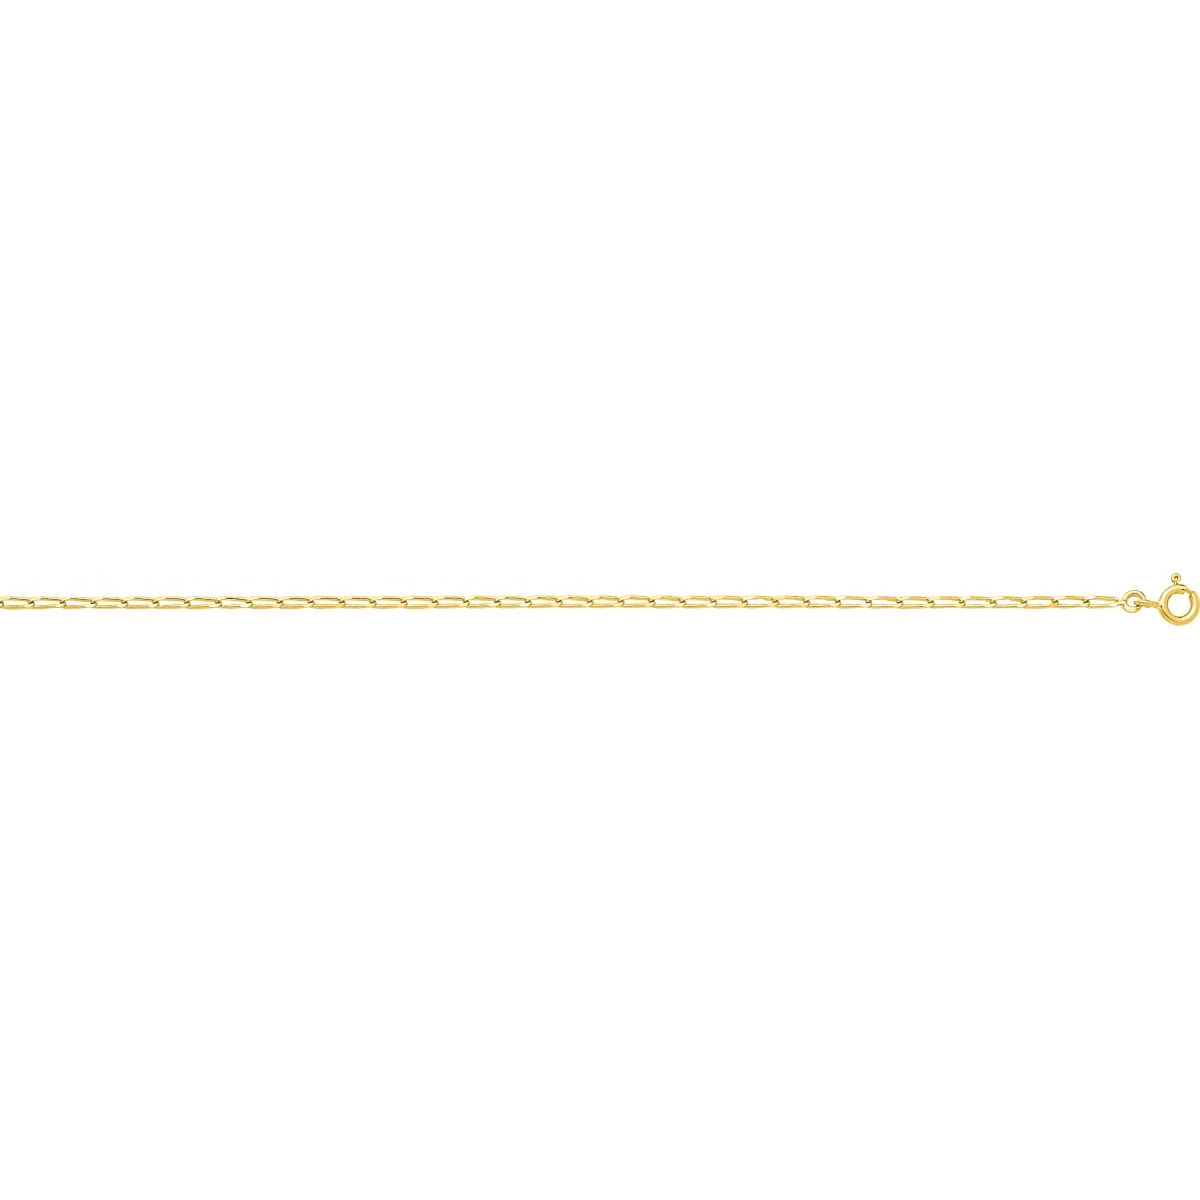 Pulseira longo cadena ligada 1.7mm 18Kt Ouro amarelo 506.17.60 Tamanho espanhol: 60